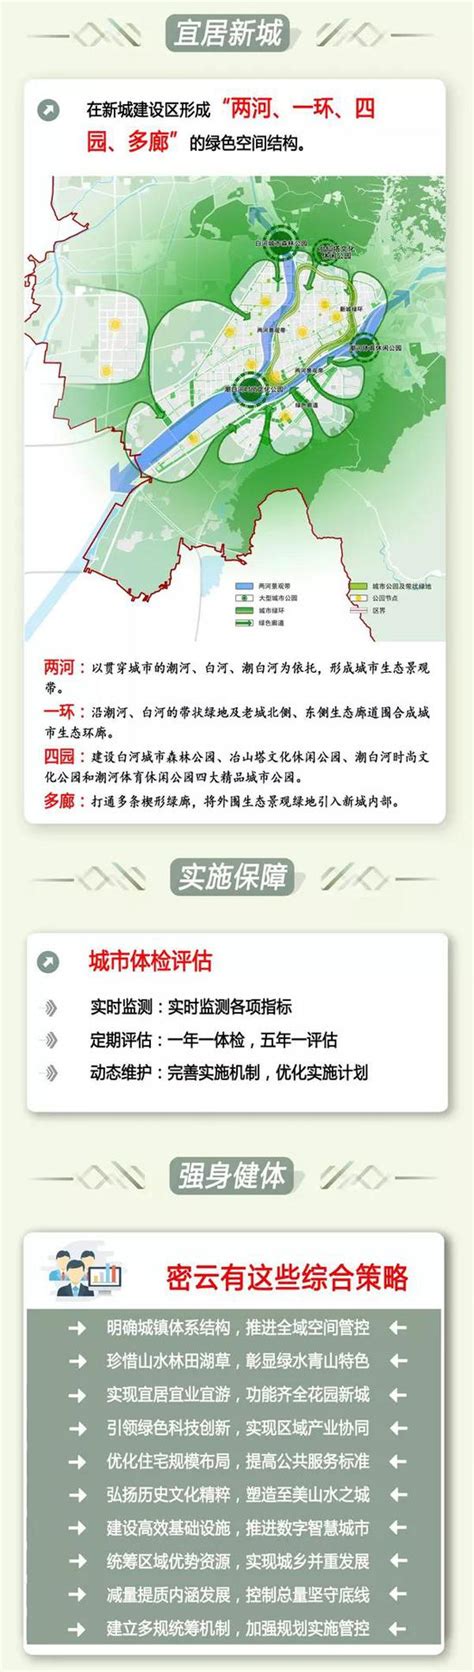 北京14个分区规划全公示 核心区控规将编制_手机新浪网